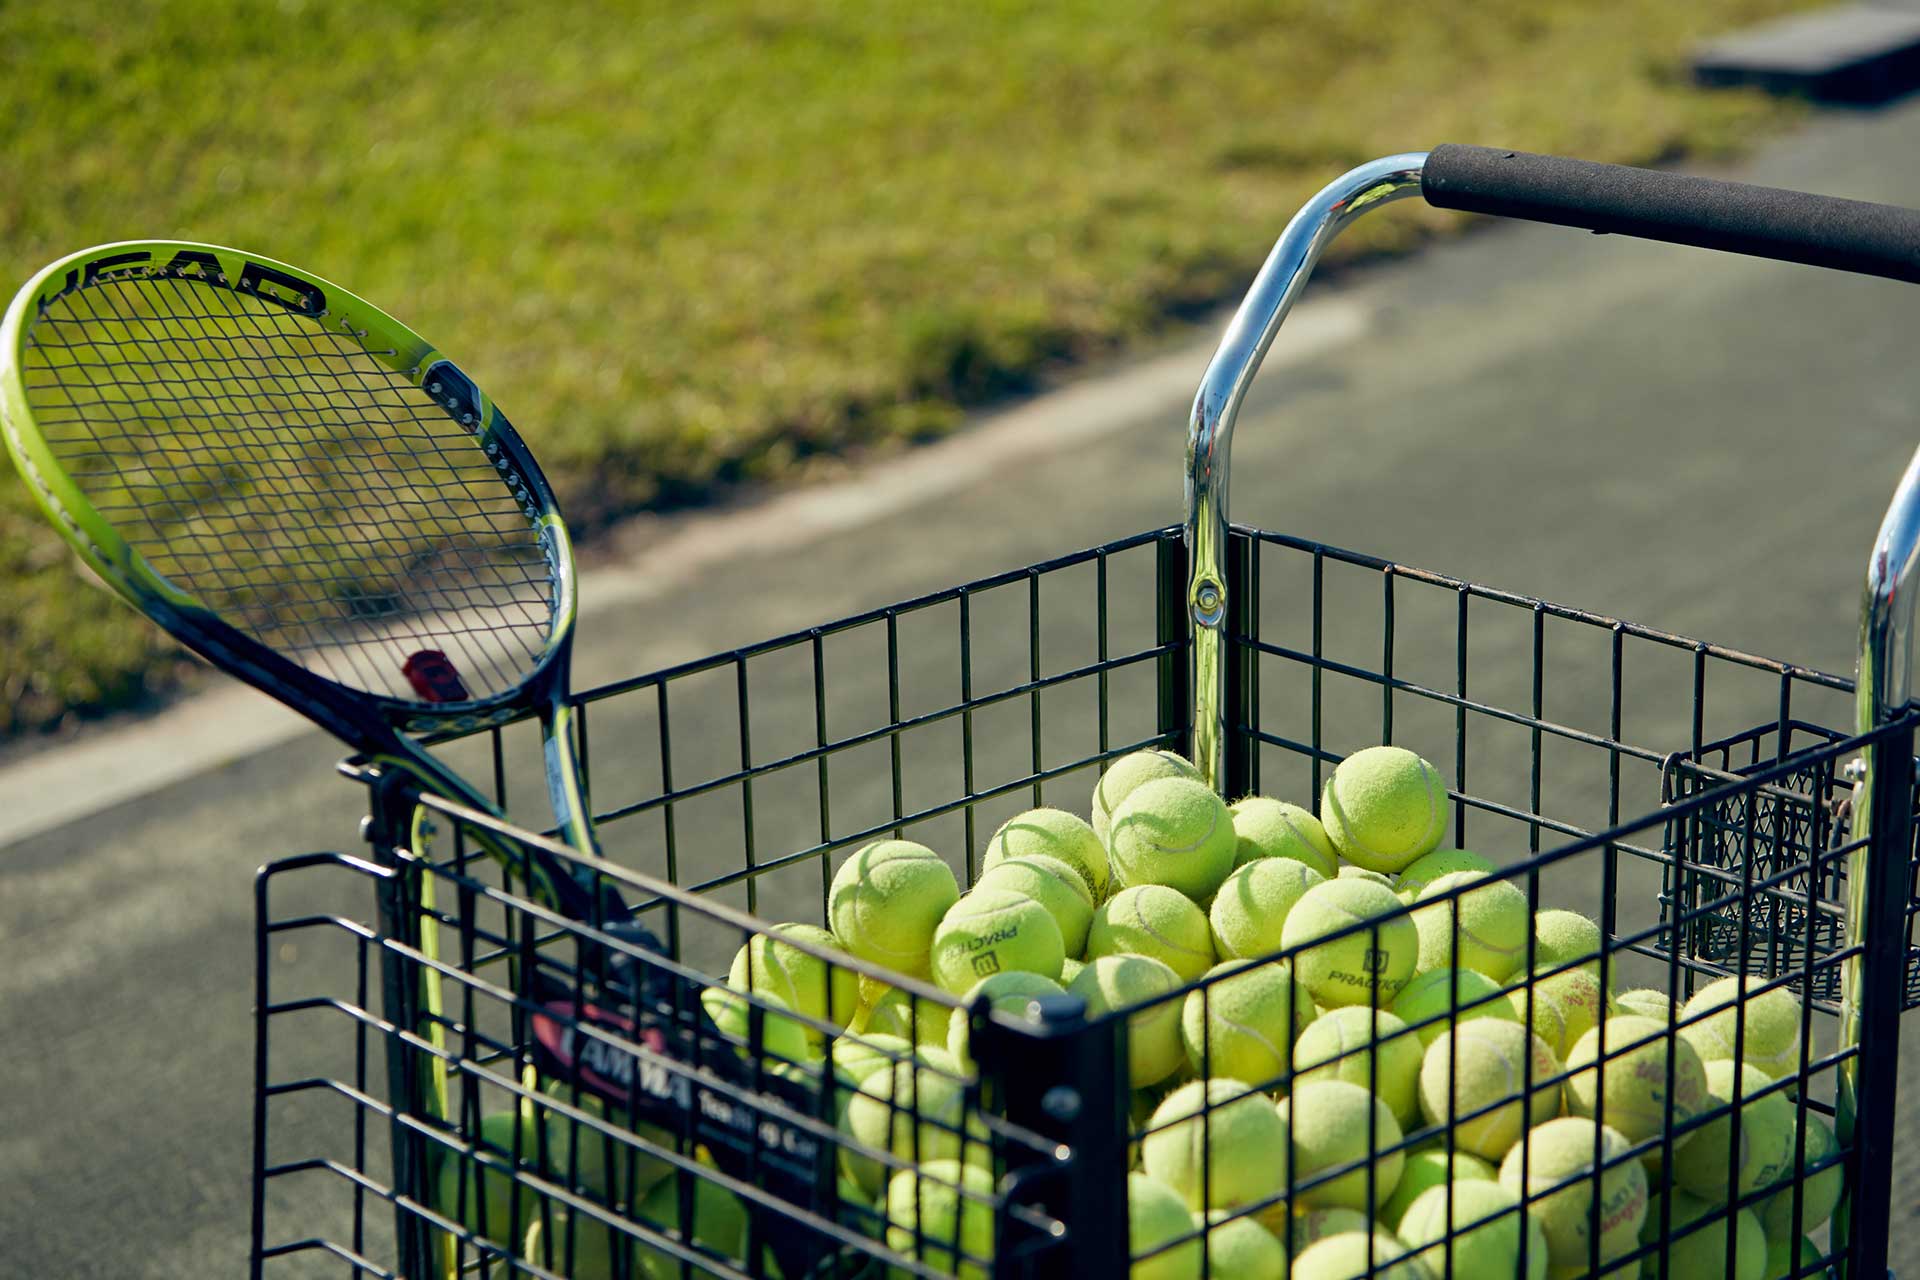 Tenniis Court and Tennis Ball Cart